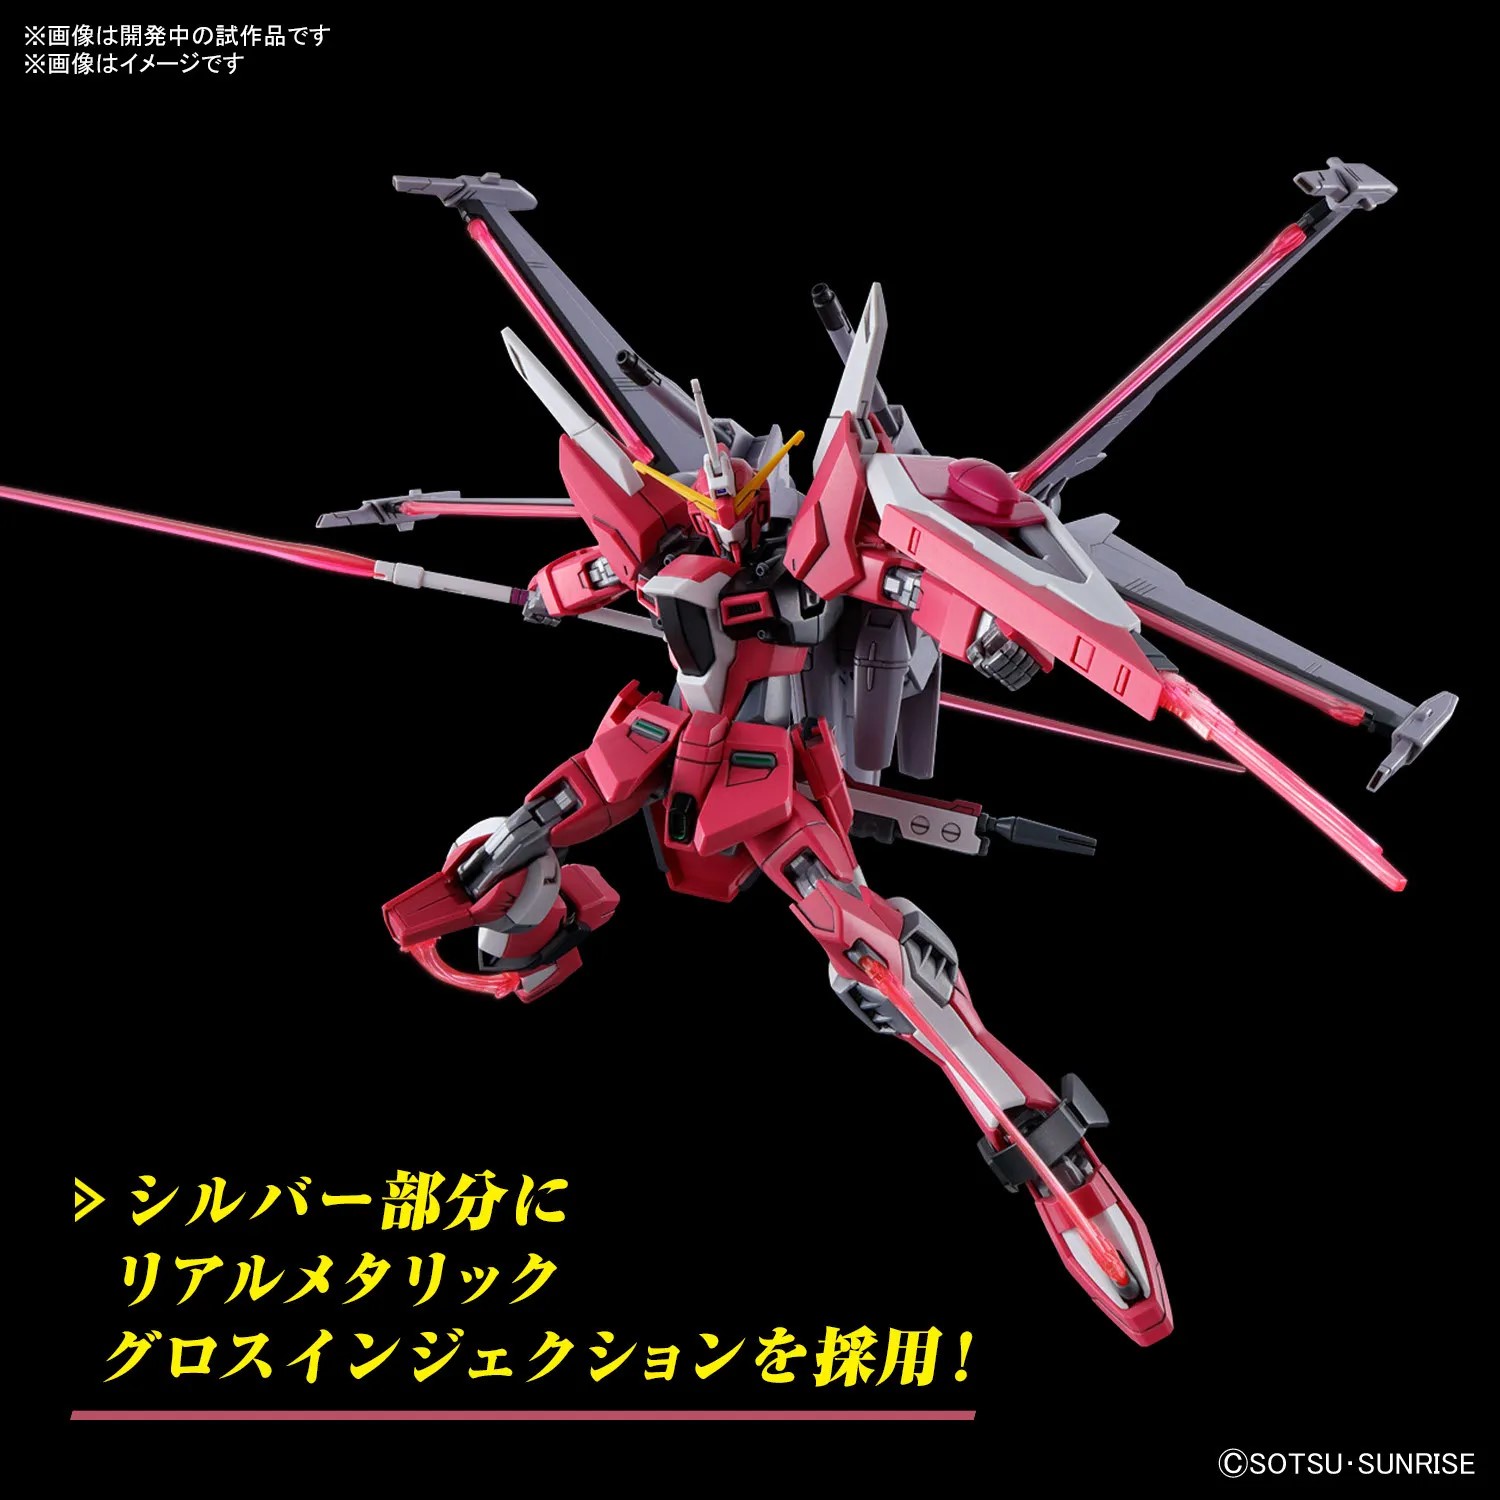 Hg 1/144 Infinite Justice Gundam Typeⅱ Bandai Hobby